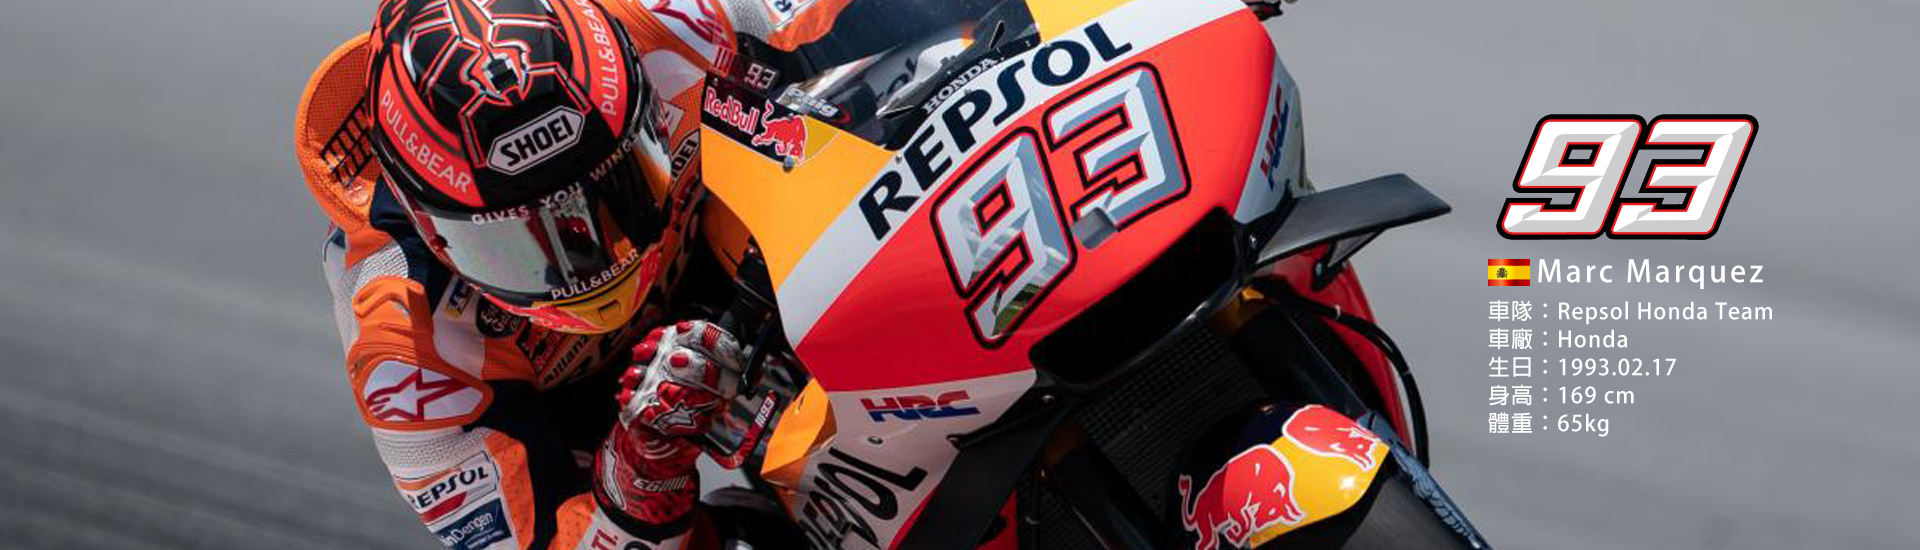 2021 MotoGP 【93】Marc Marquez